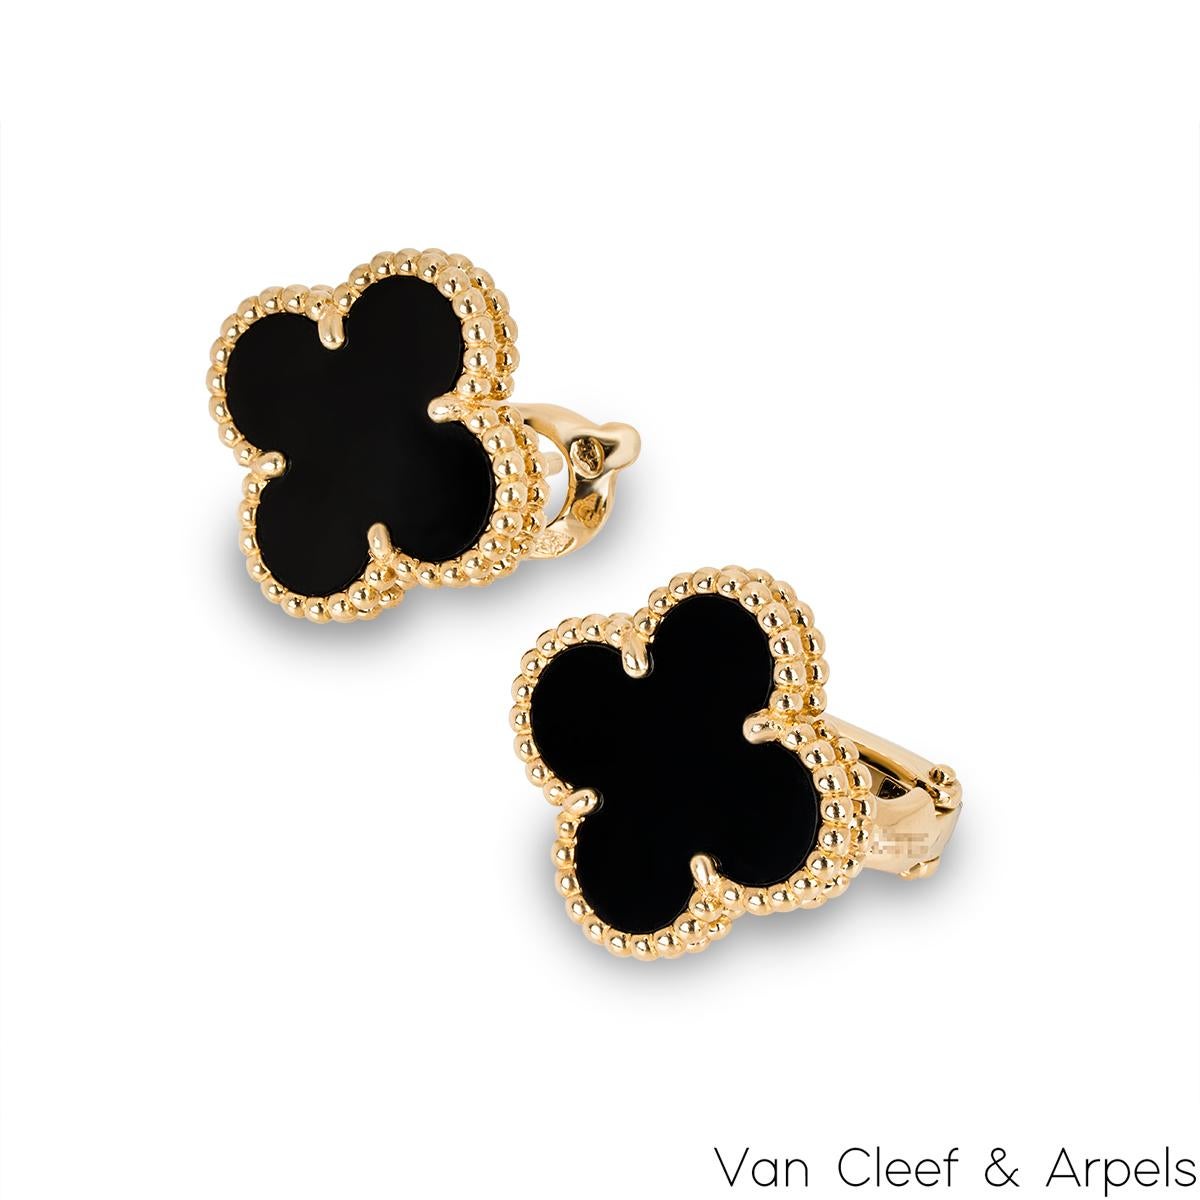 Magnifique paire de boucles d'oreilles Van Cleef & Arpels en or jaune 18 carats et onyx de la collection Vintage Alhambra. Les boucles d'oreilles présentent le motif emblématique du trèfle à quatre feuilles, avec une incrustation d'onyx au centre,